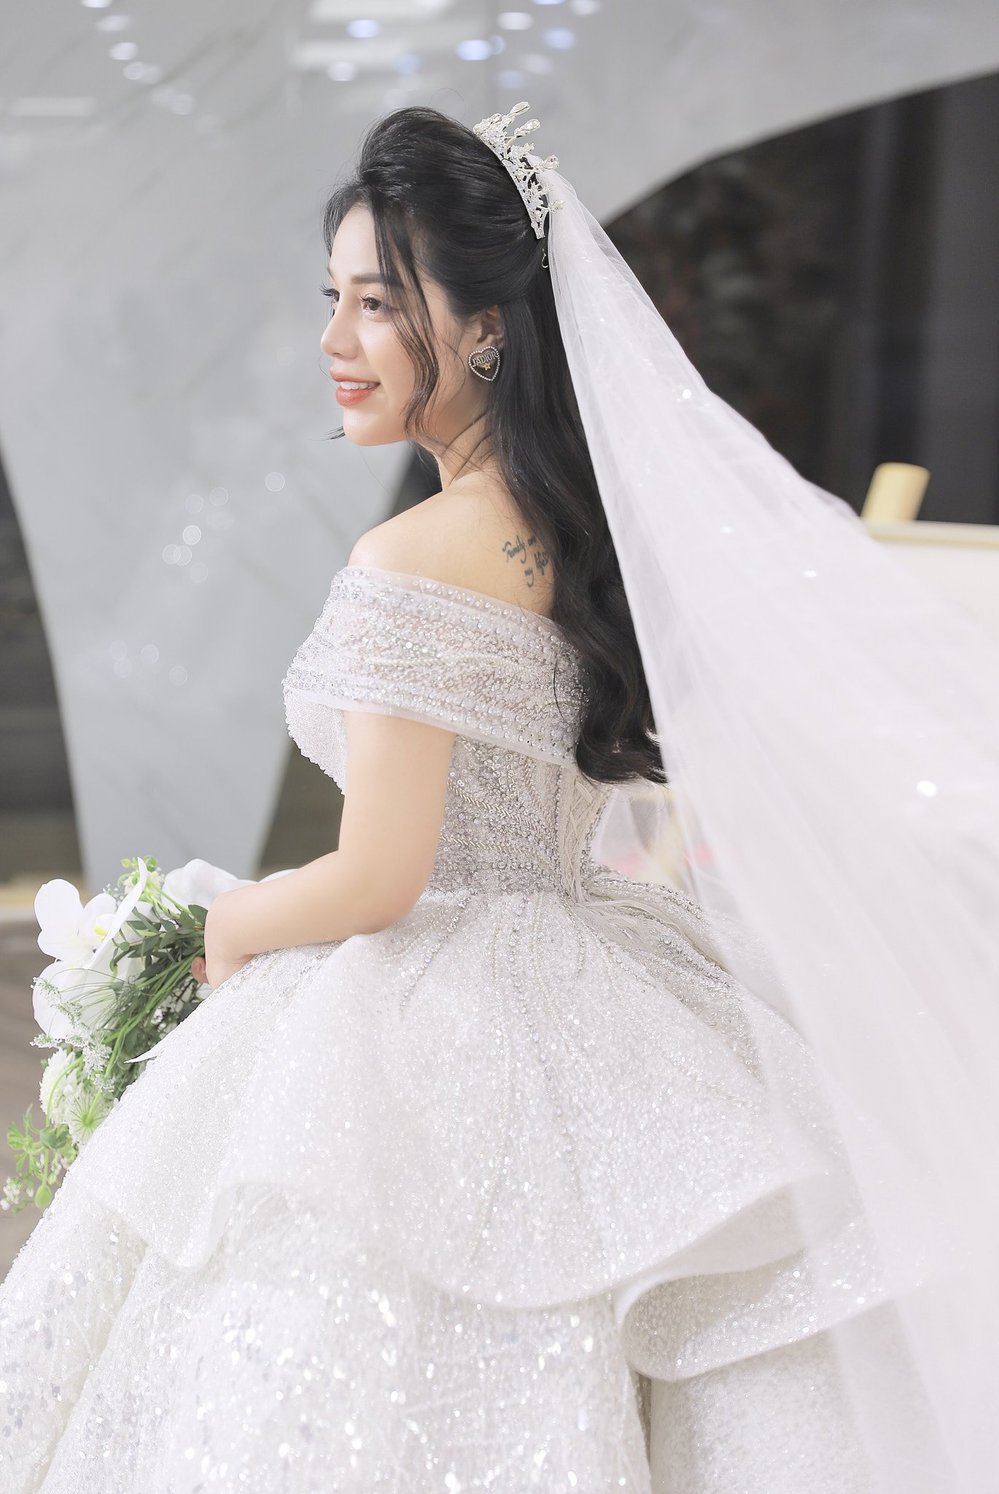 Trung vệ Bùi Tiến Dũng kỳ công thiết kế váy cưới hơn tỉ đồng cho Khánh Linh